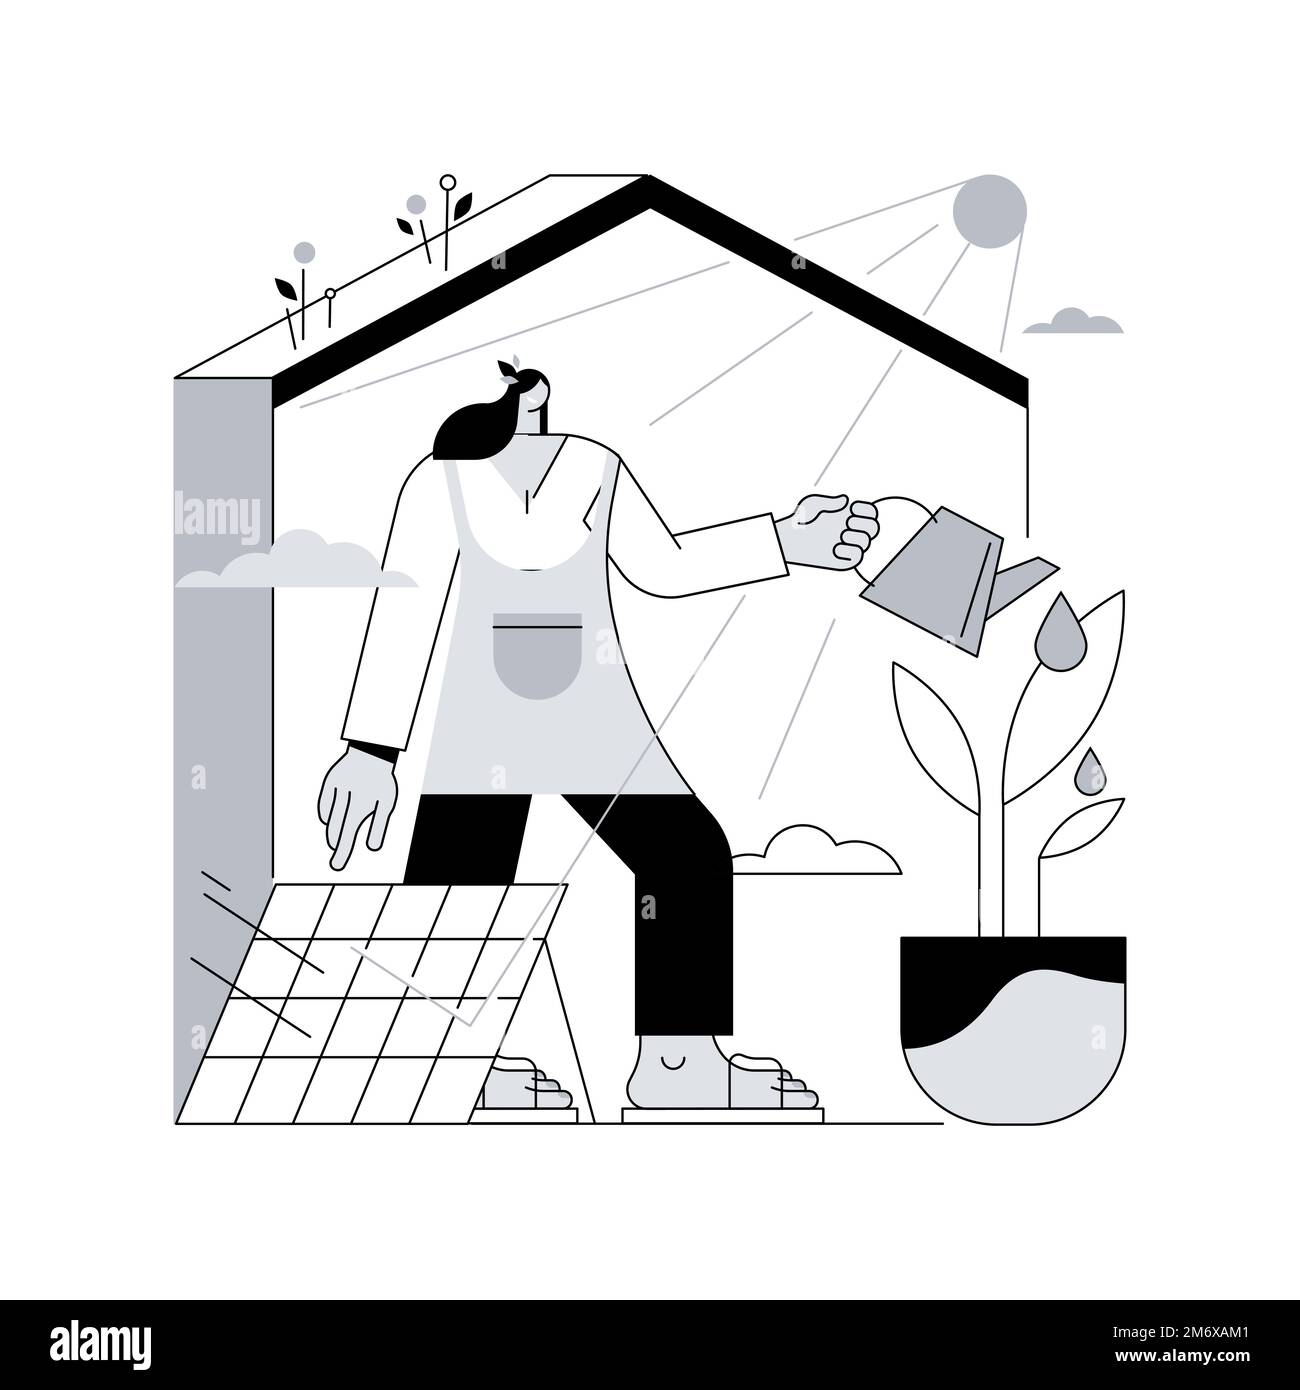 Illustrazione vettoriale del concetto astratto di casa ecologica. Casa a basso impatto ambientale, tecnologia ecocompatibile, isolamento termico, risorse rinnovabili, passivo Illustrazione Vettoriale